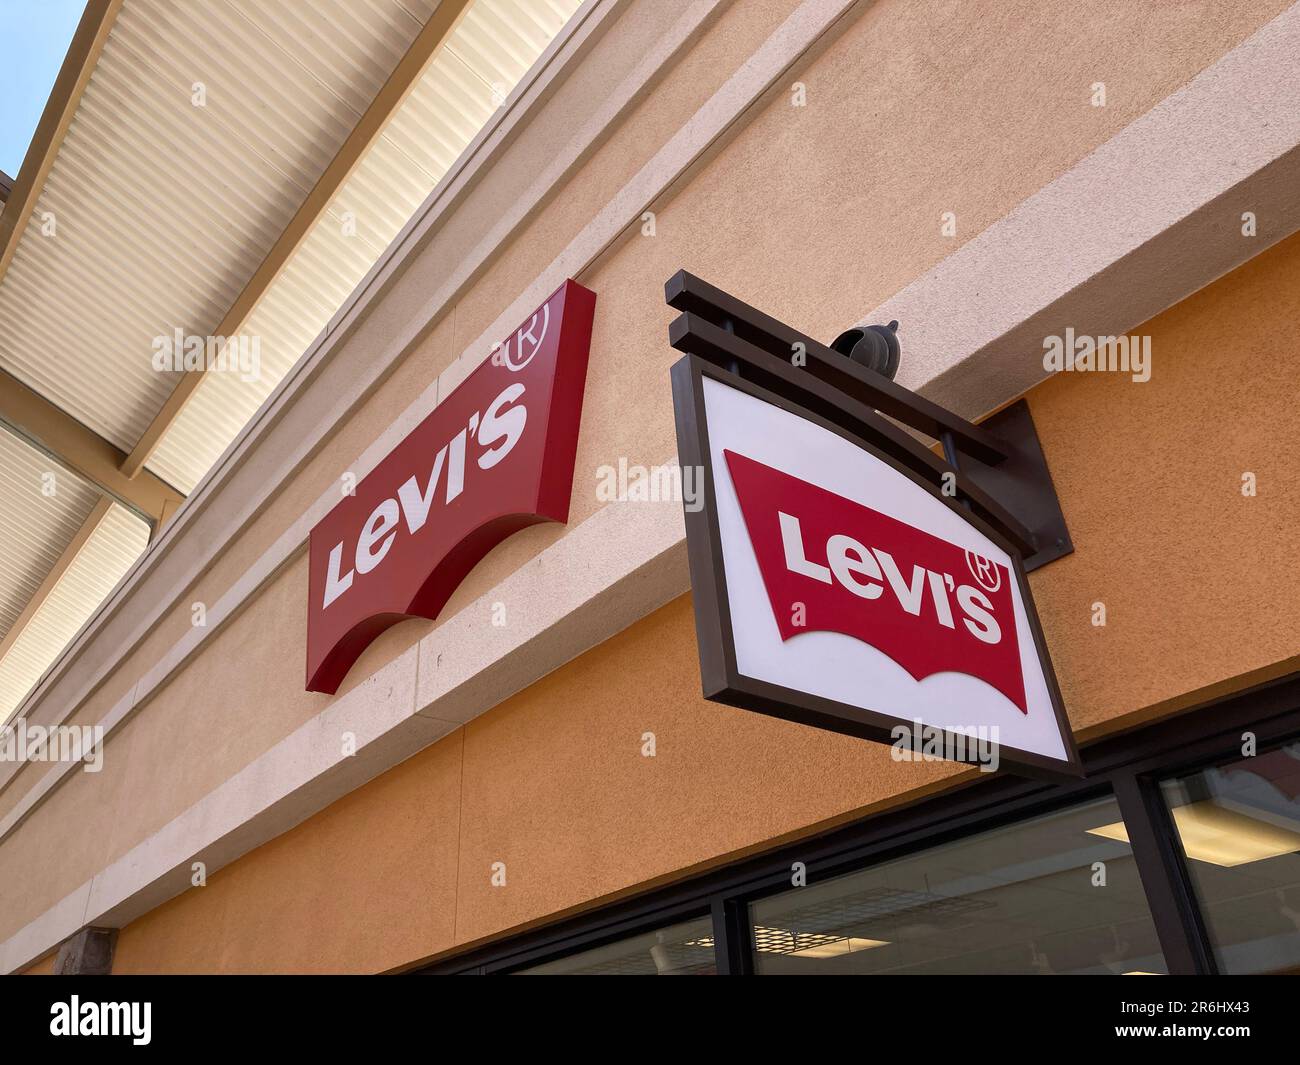 Levis-Schild, Logo auf der Fassade des Geschäfts – Kalifornien, USA – 2023  Stockfotografie - Alamy